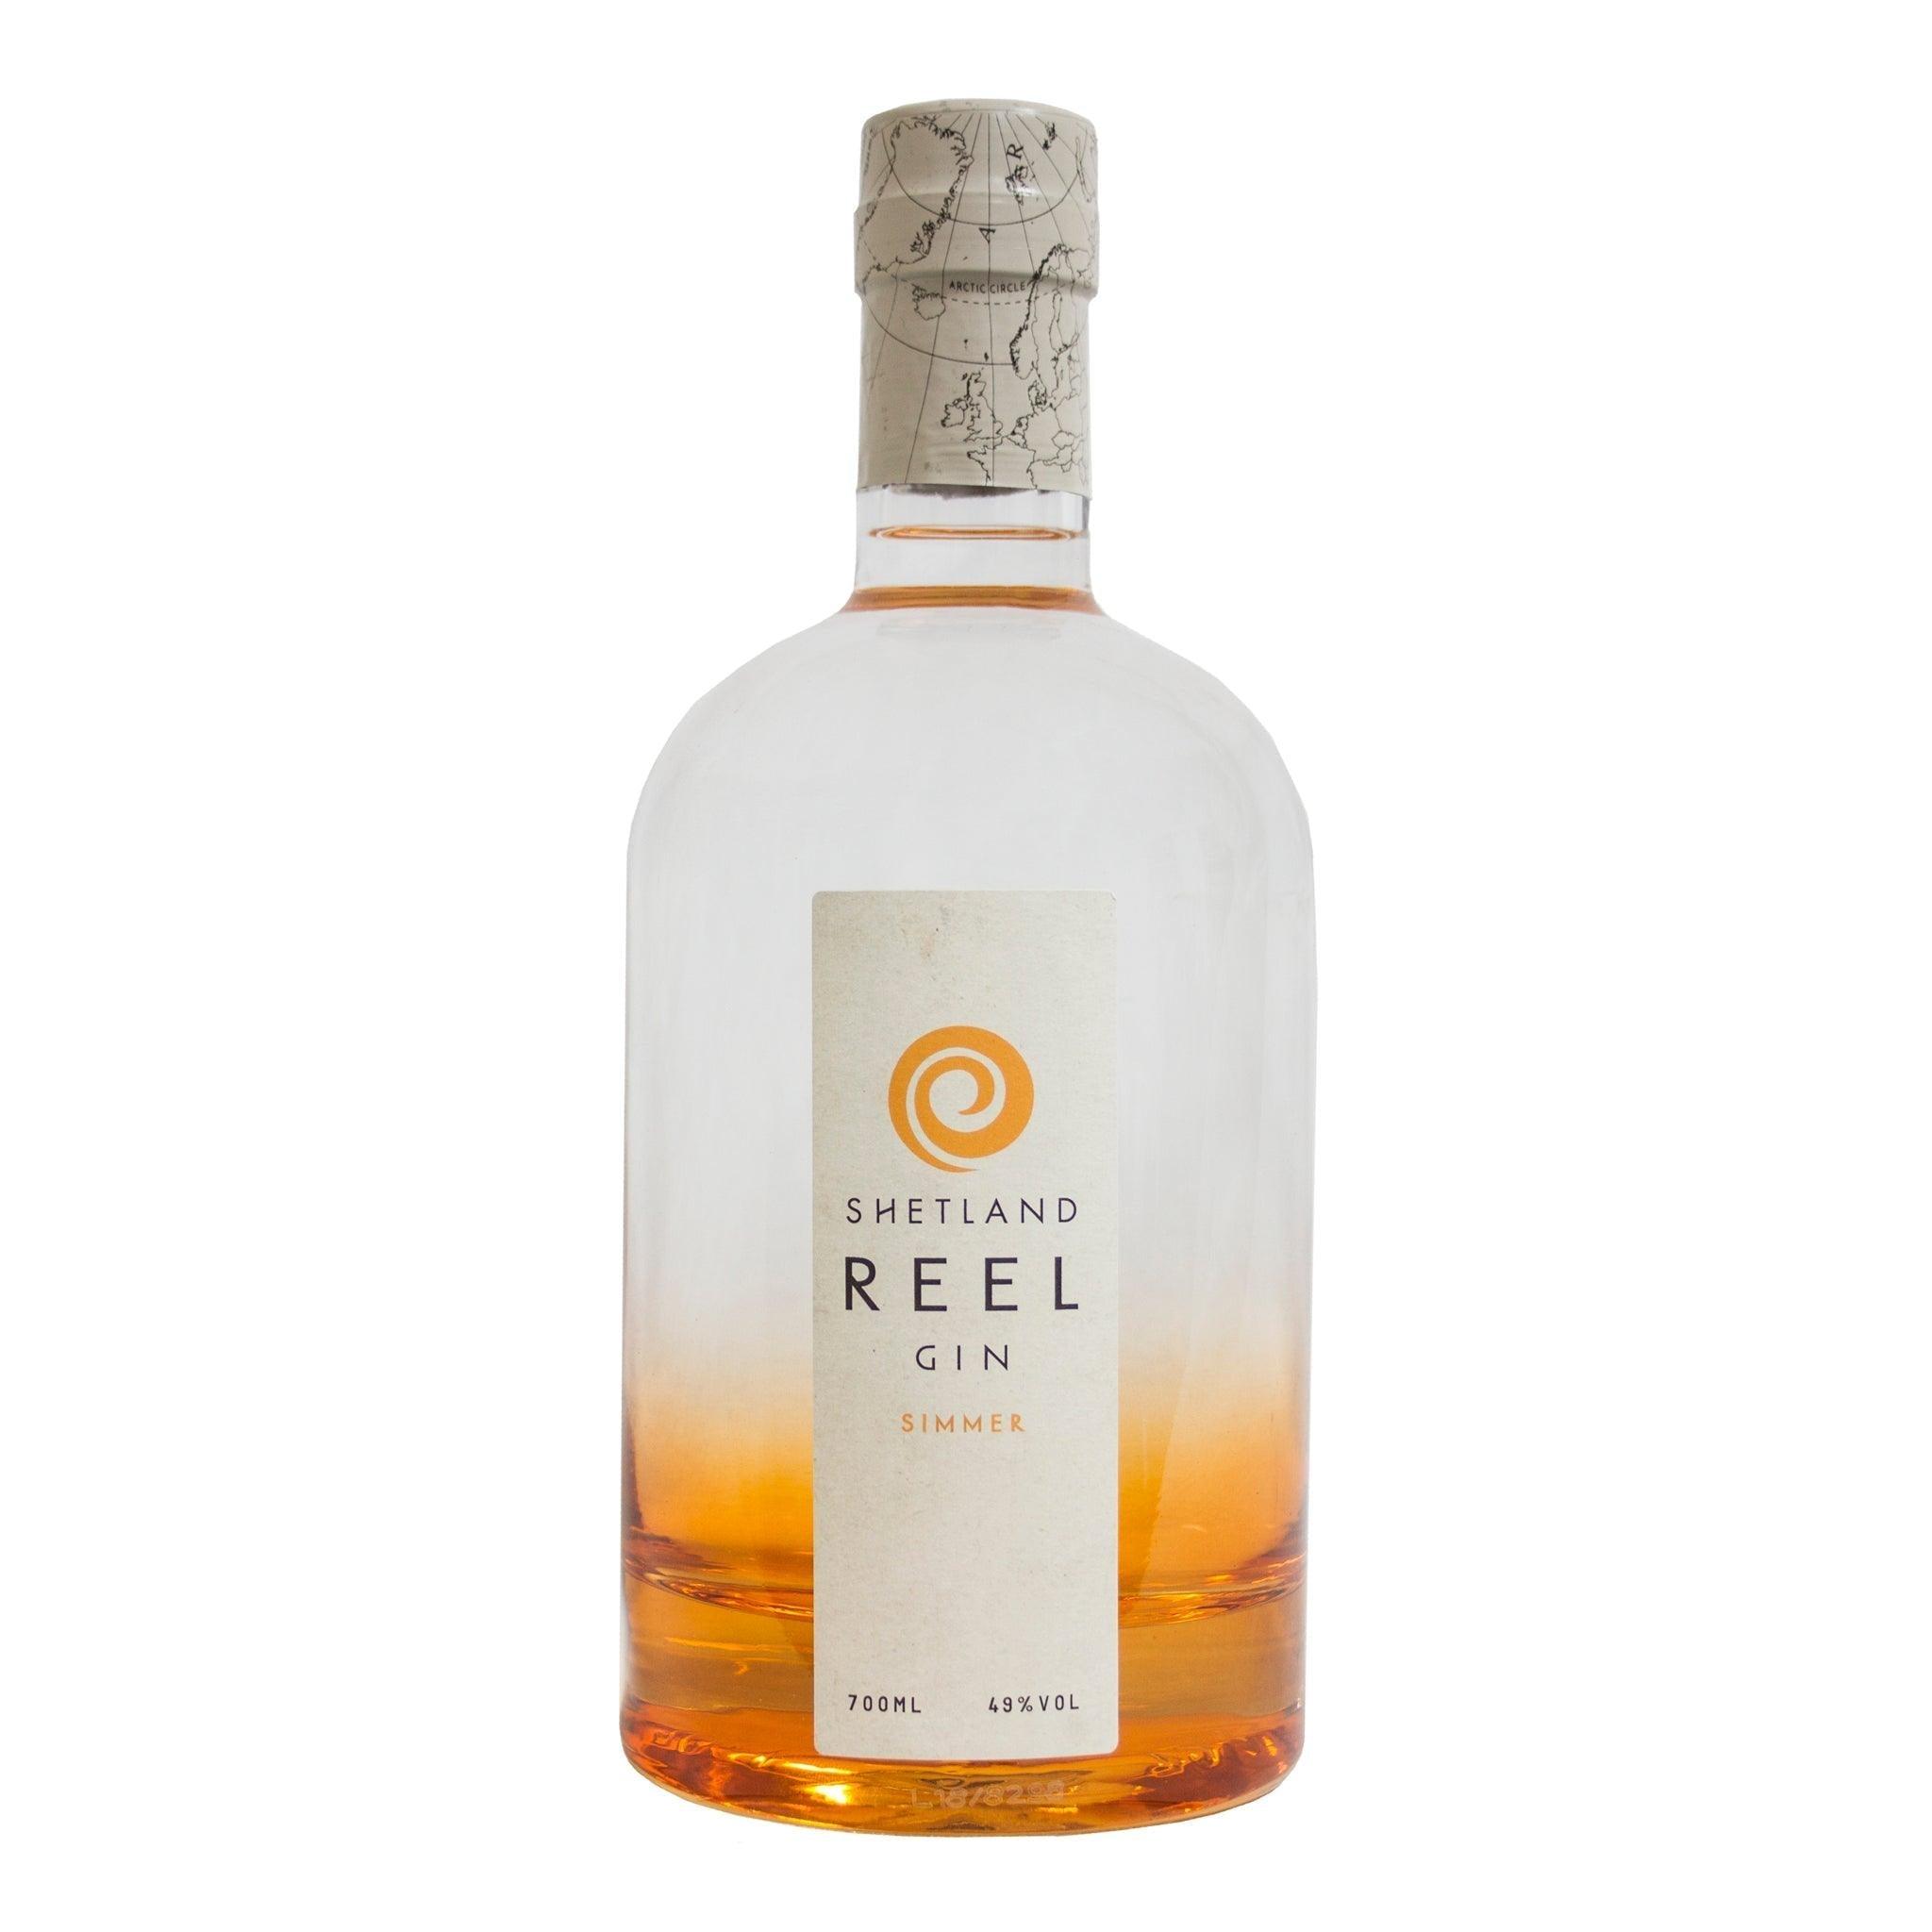 Shetland Reel Gin, Simmer